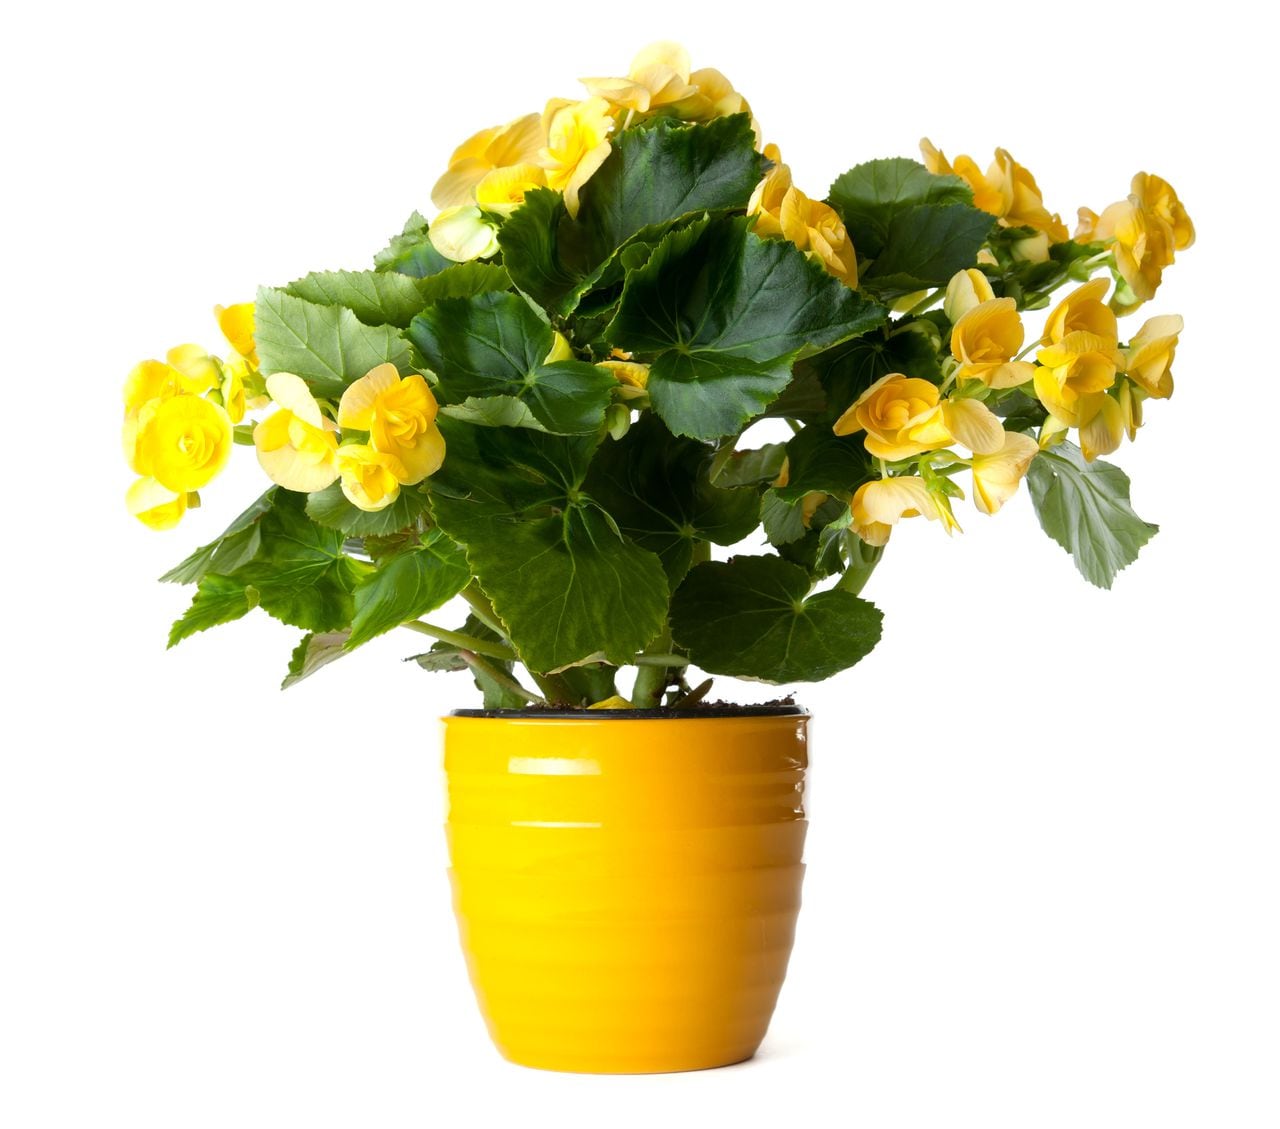 Regalar flores amarillas el 21 de marzo como inicio de una etapa feliz